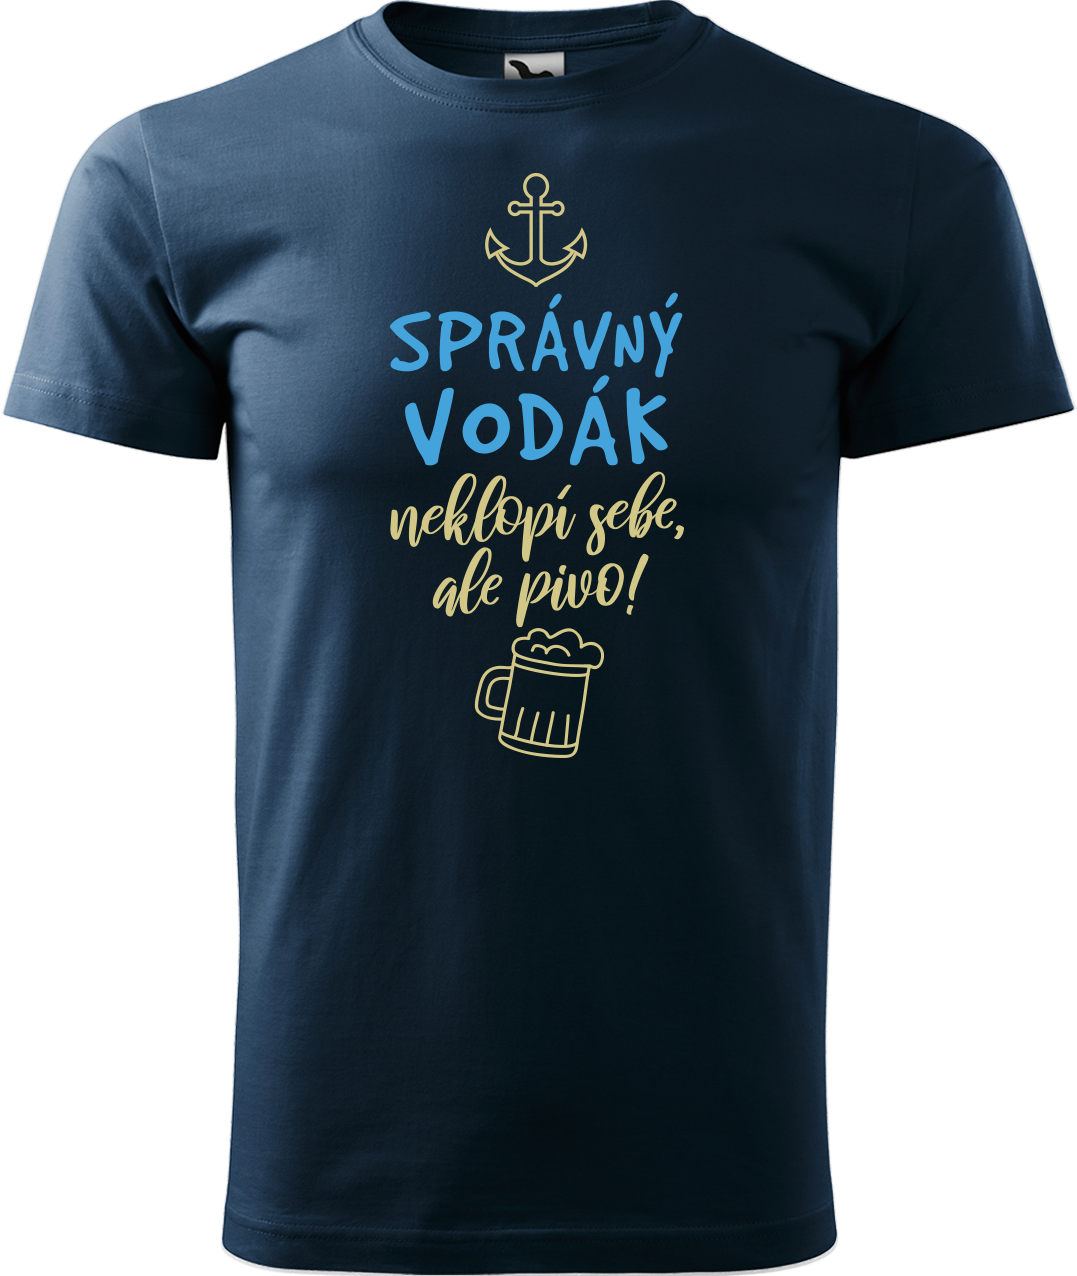 Pánské vodácké tričko - Správný vodák Velikost: L, Barva: Námořní modrá (02)